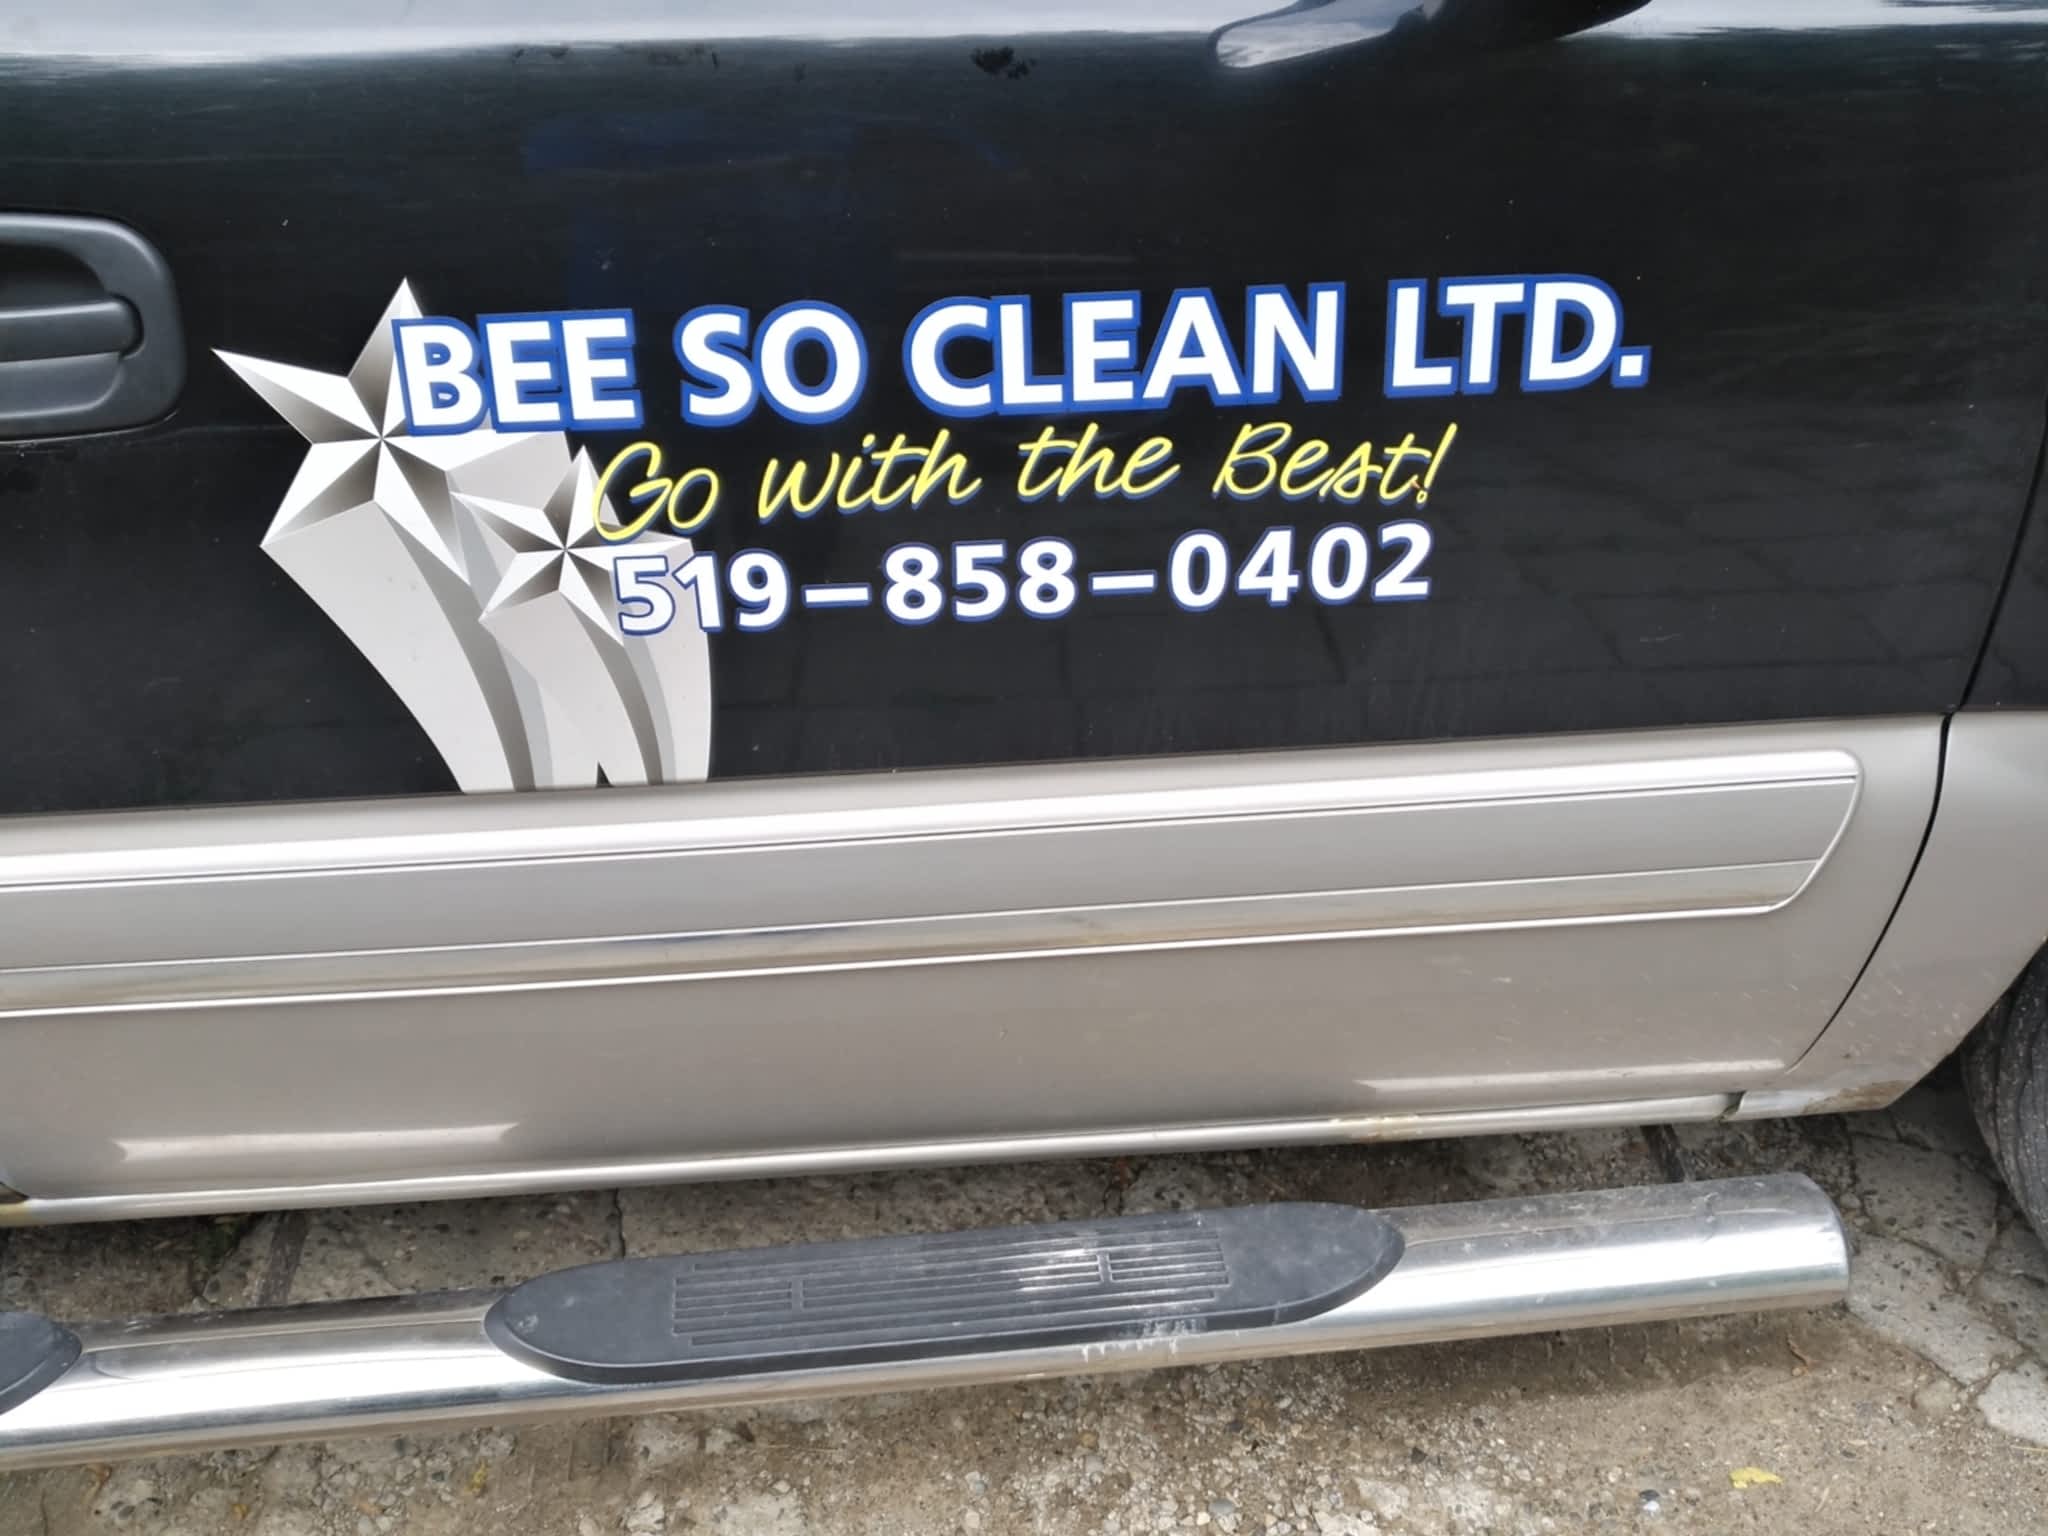 photo Bee So Clean Ltd